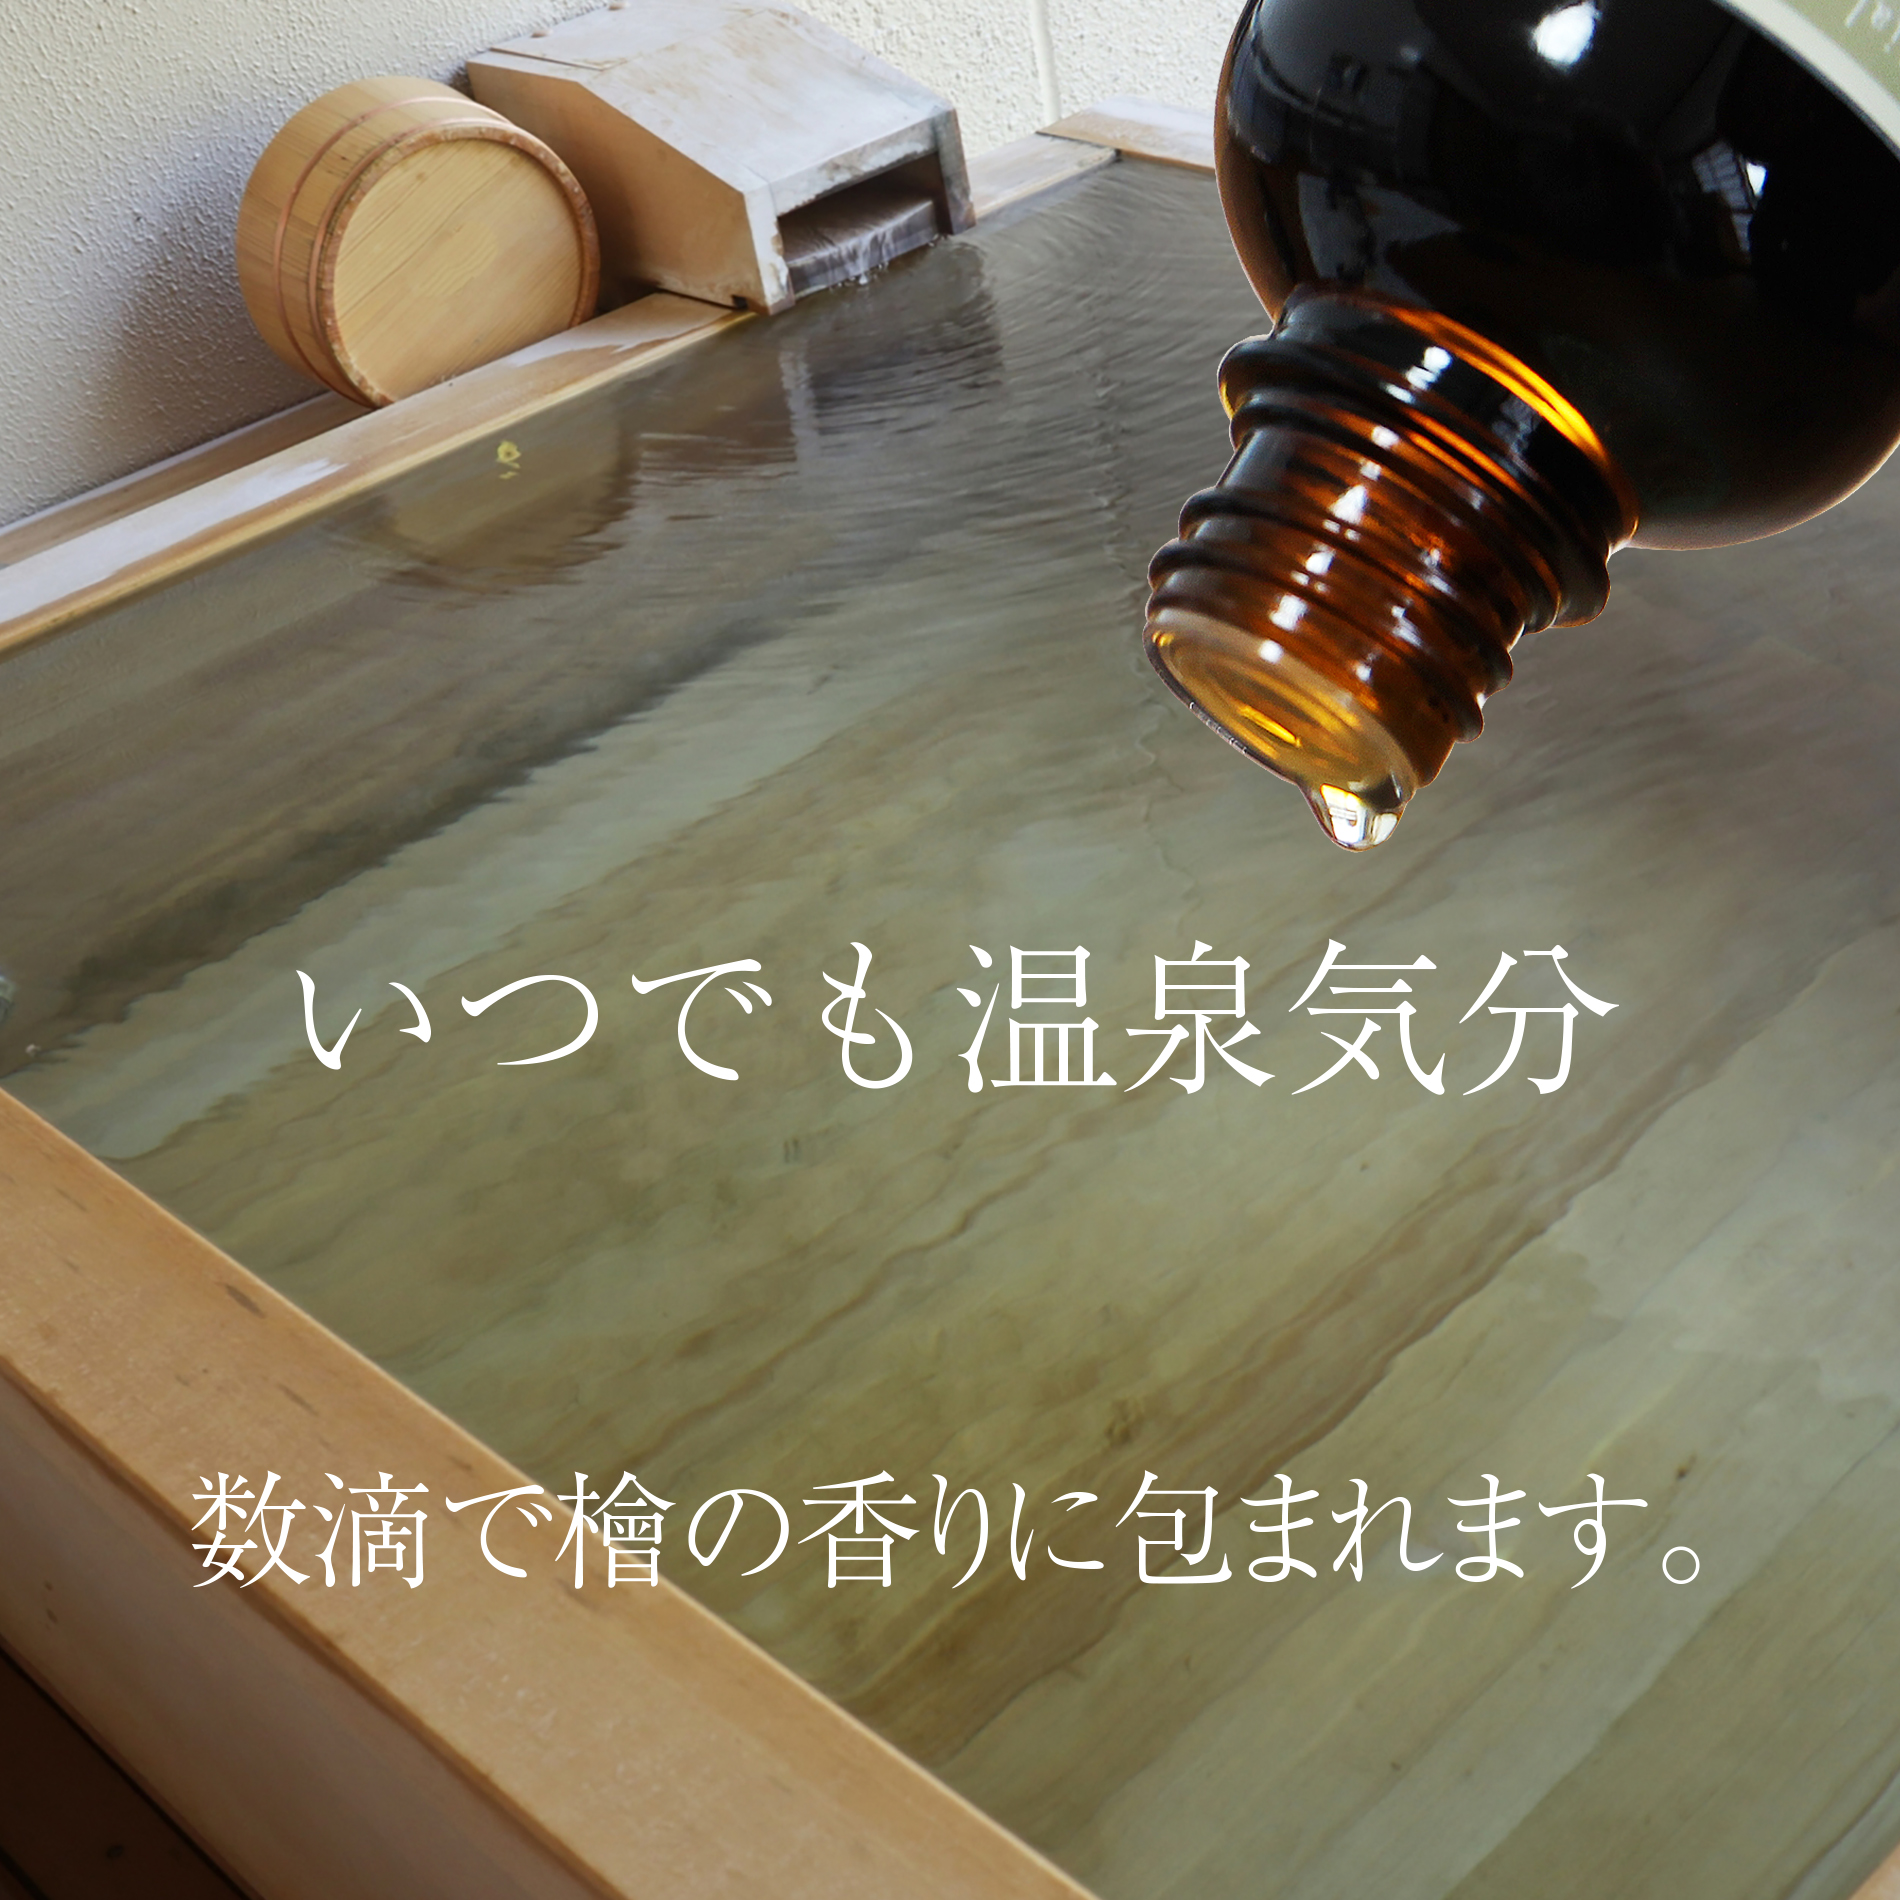 青森ひば油 天然エッセンシャルオイル 自然の入浴剤の画像